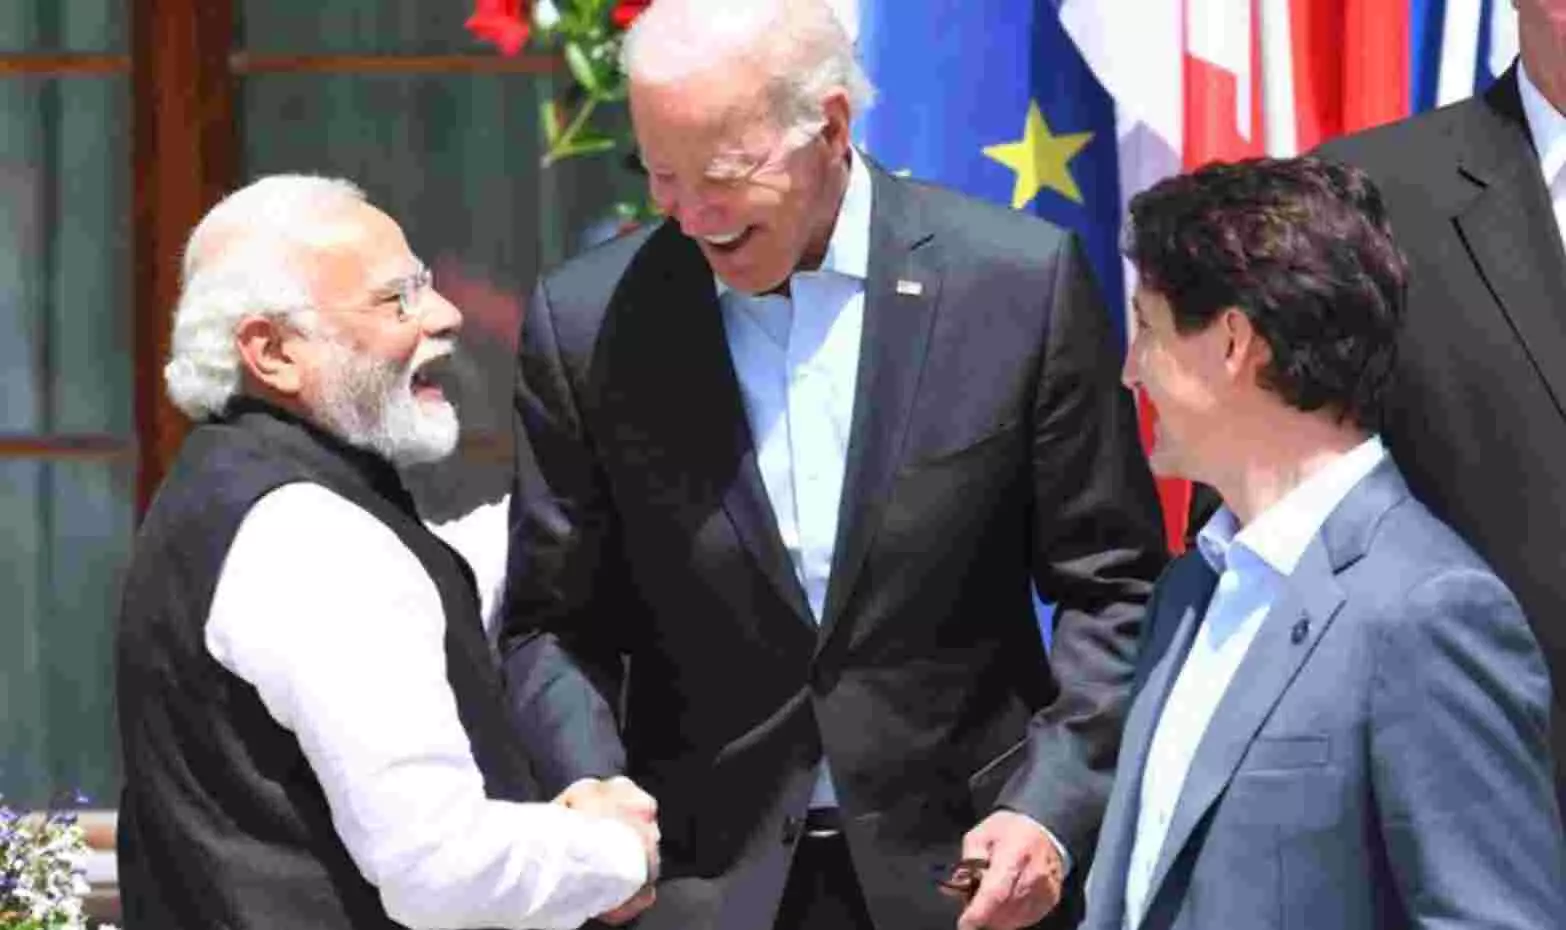 PM Modi in G7 Summit: G7 समिट में बाइडन और ट्रूडो से मिले PM मोदी, दुनिया के 7 अमीर देशों की बैठक जारी